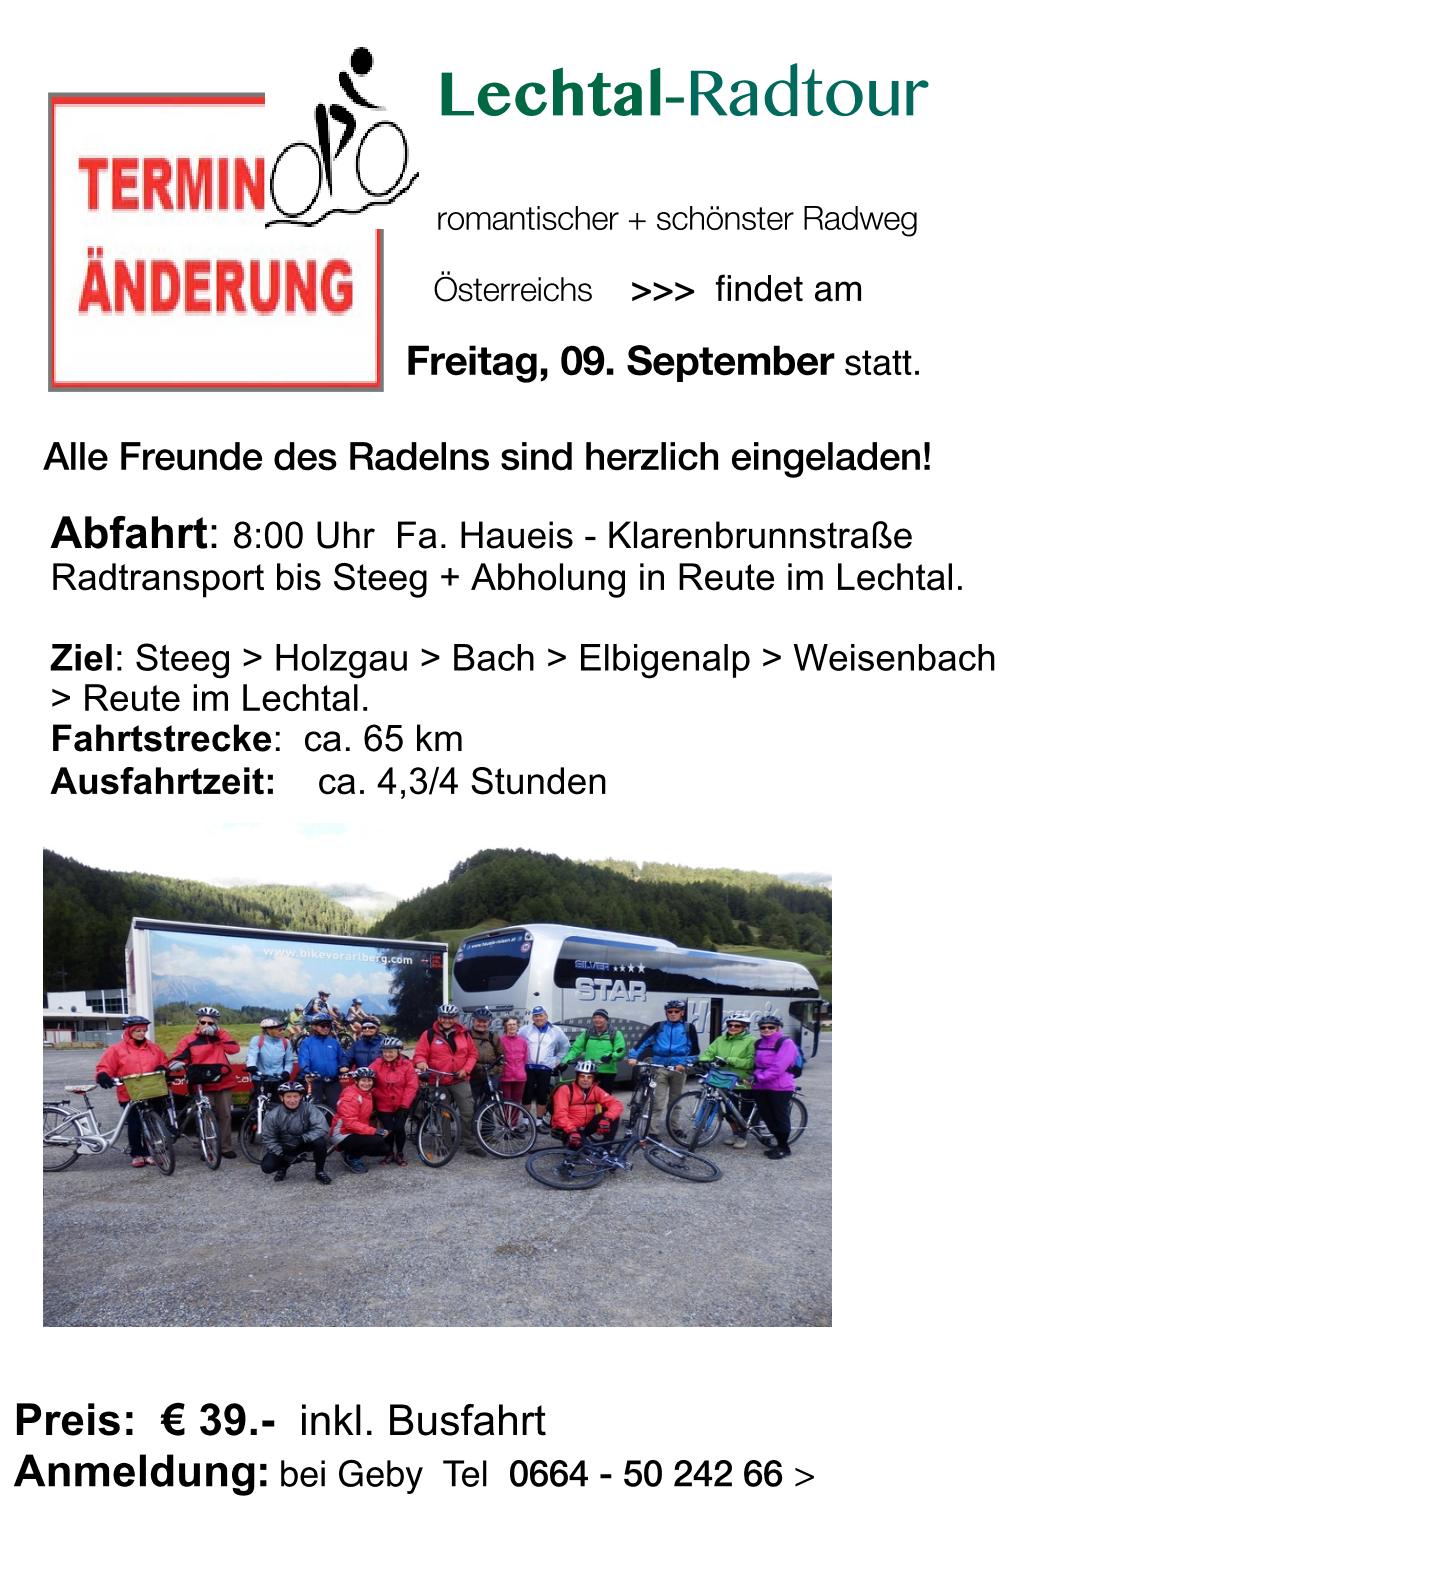 Plakat Radtour LECHTAL